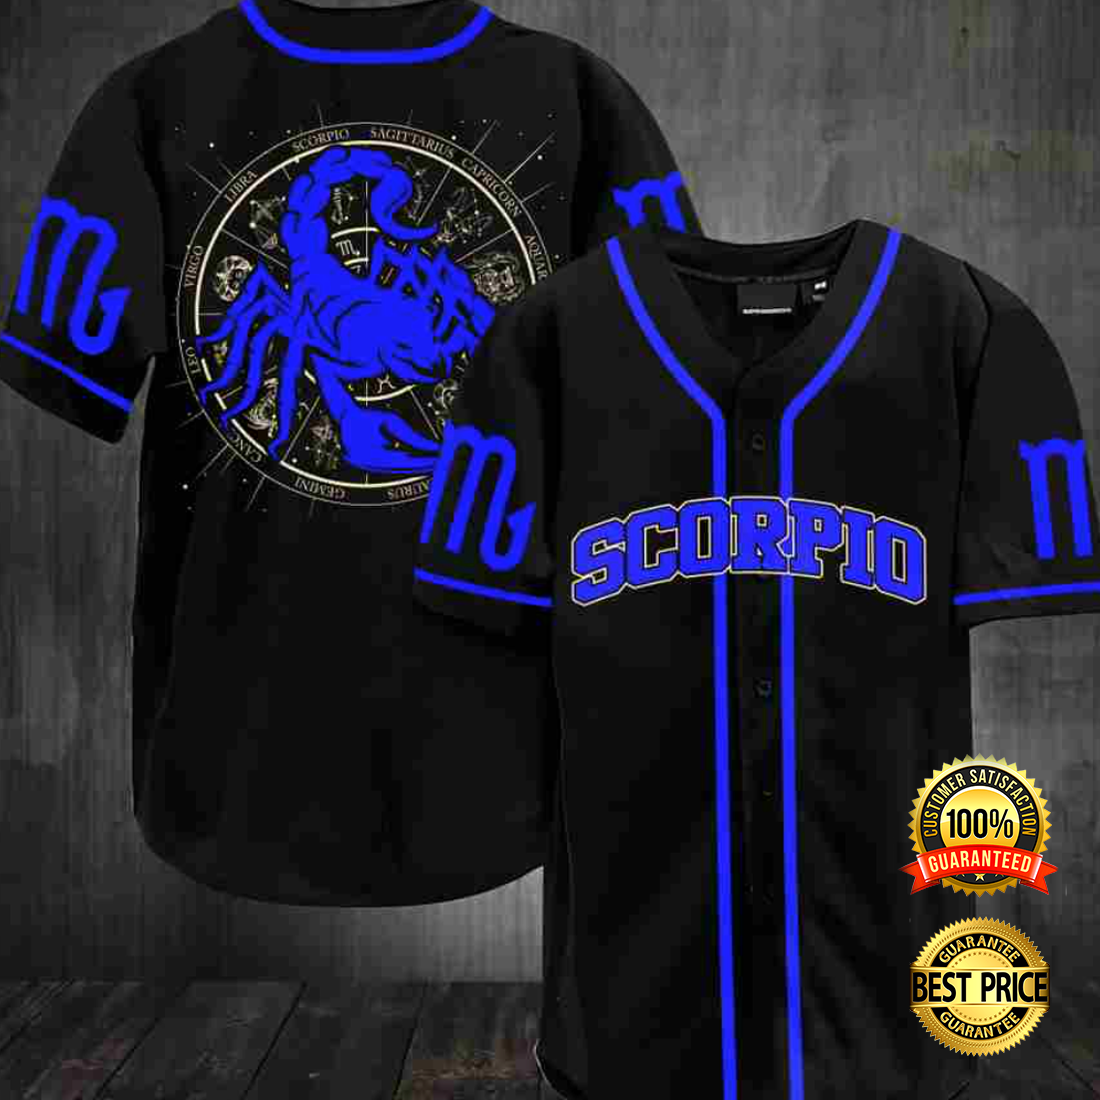 Scorpio baseball jersey